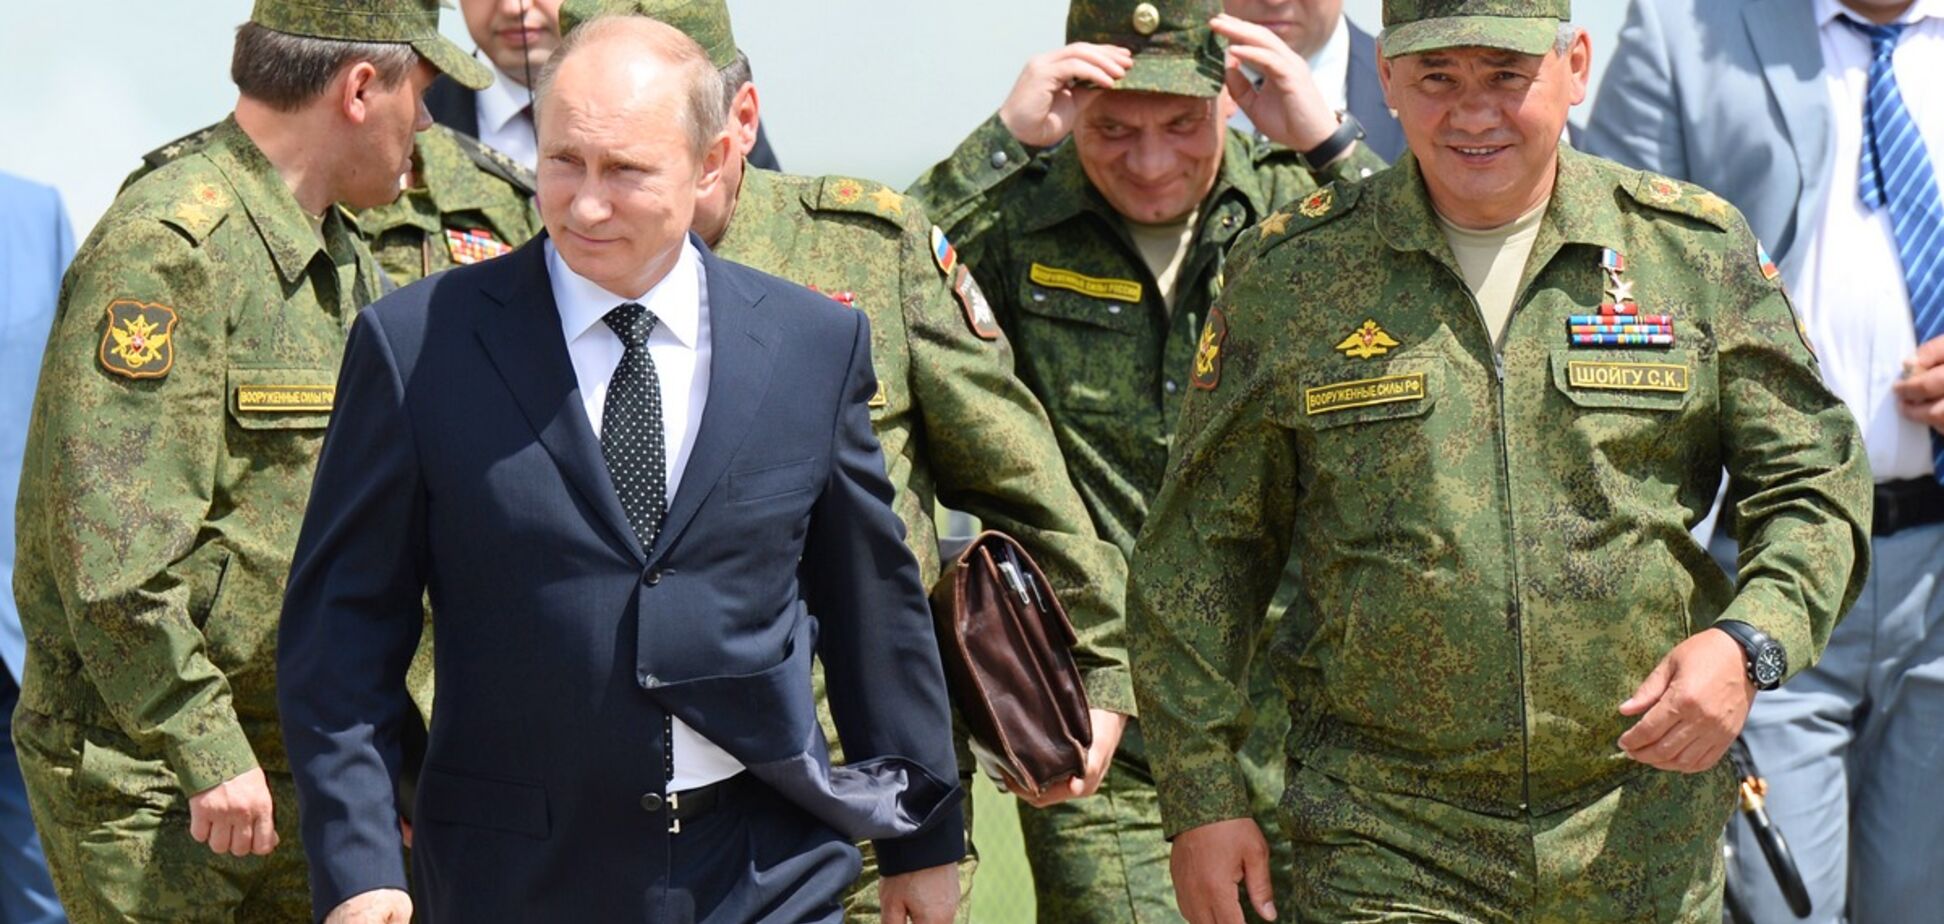 Заслужил грамоту от Госдепа: Голышев рассказал, как Путин порадовал американскую 'маму'